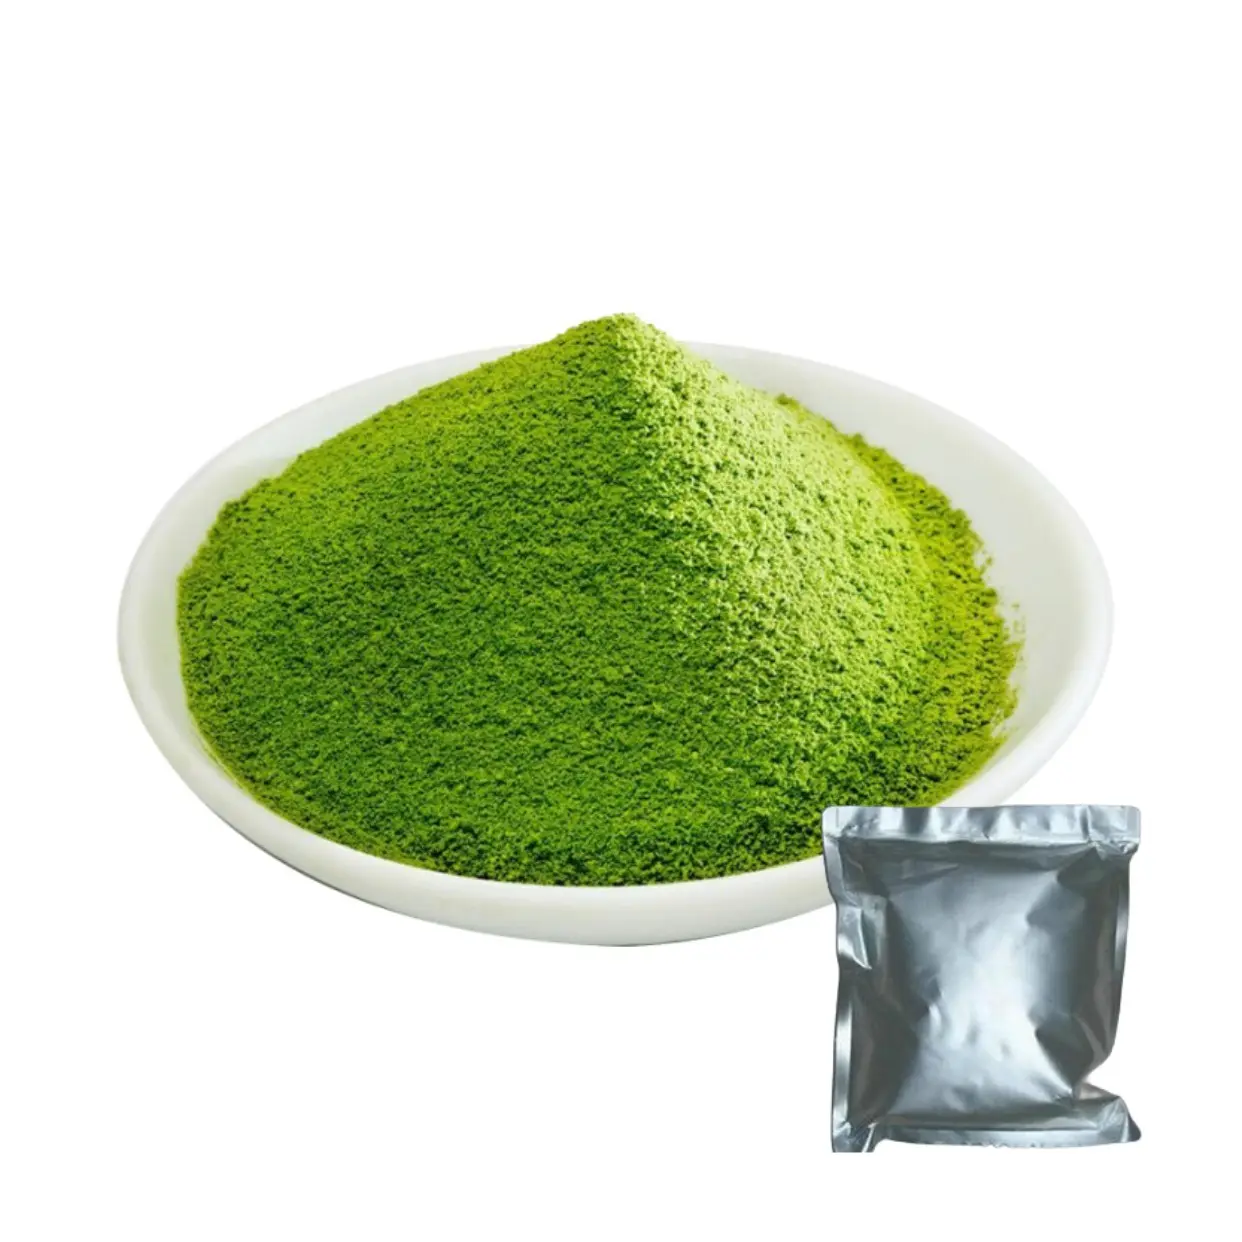 USDA organik tören toz yeşil çay çay tozu ince yeşil çay tozu yeşil çay